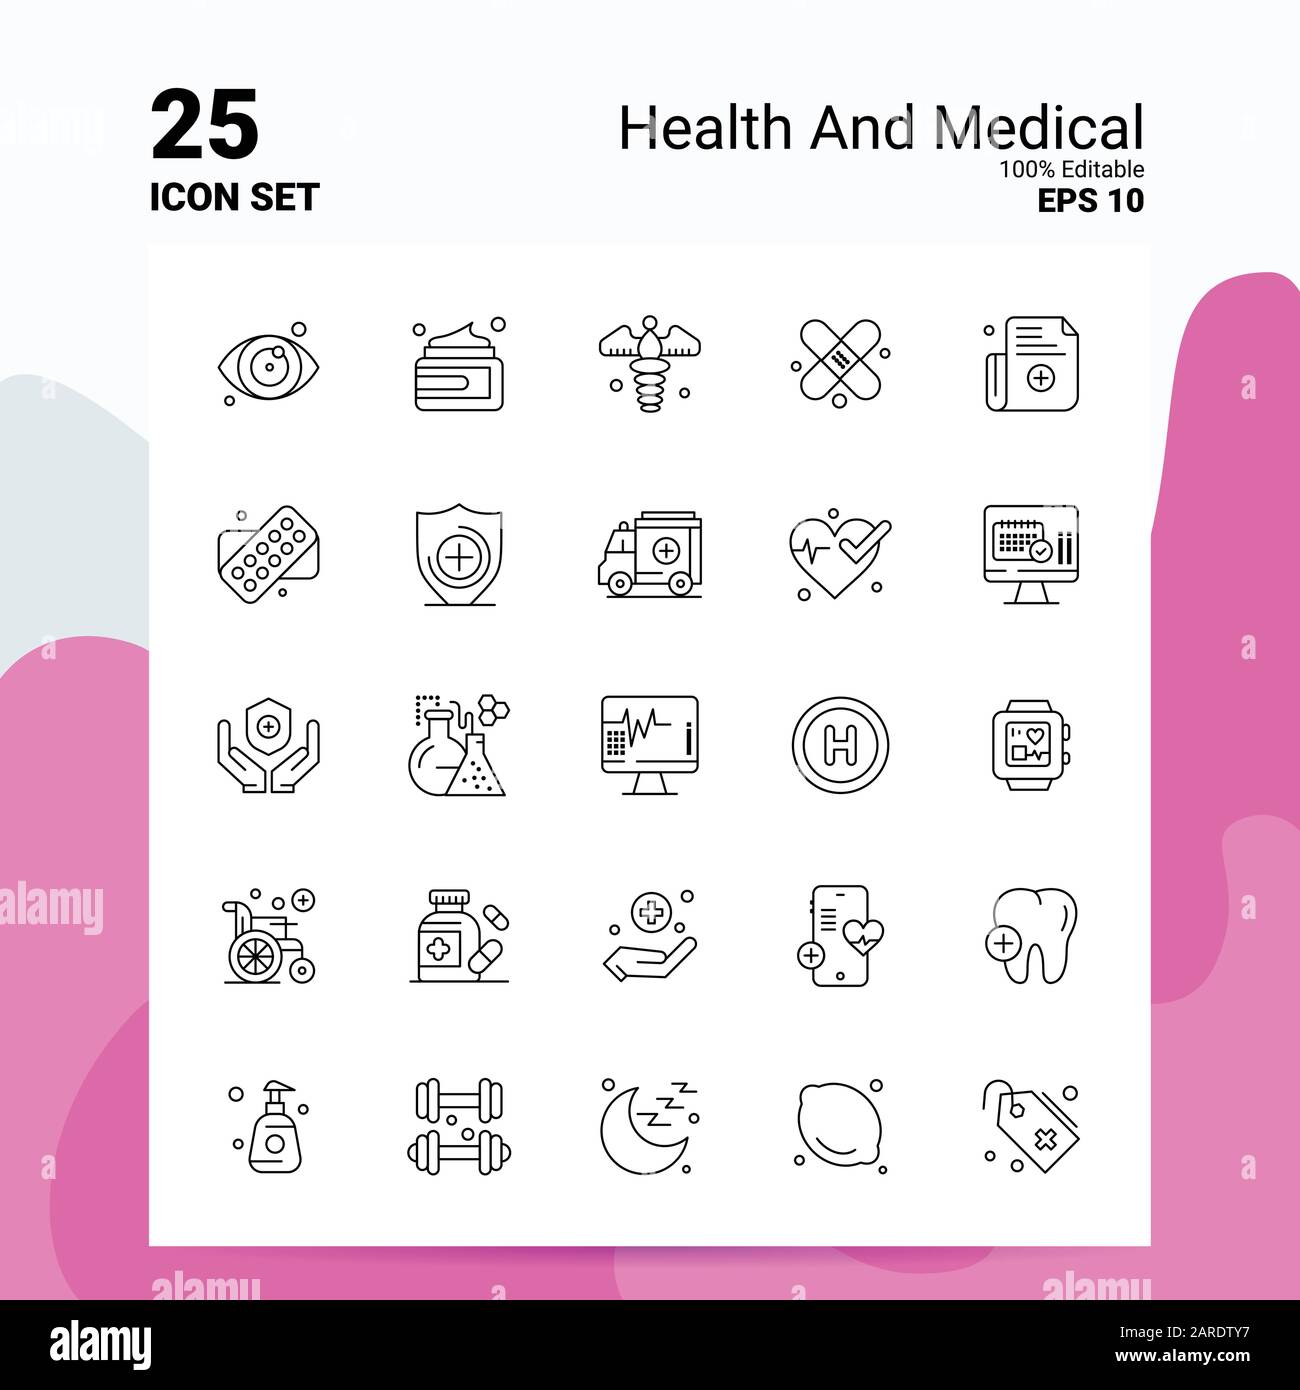 25 Conjunto De Iconos Médicos Y Sanitarios Archivos Eps 10 Editables Al 100 Concepto De 8822